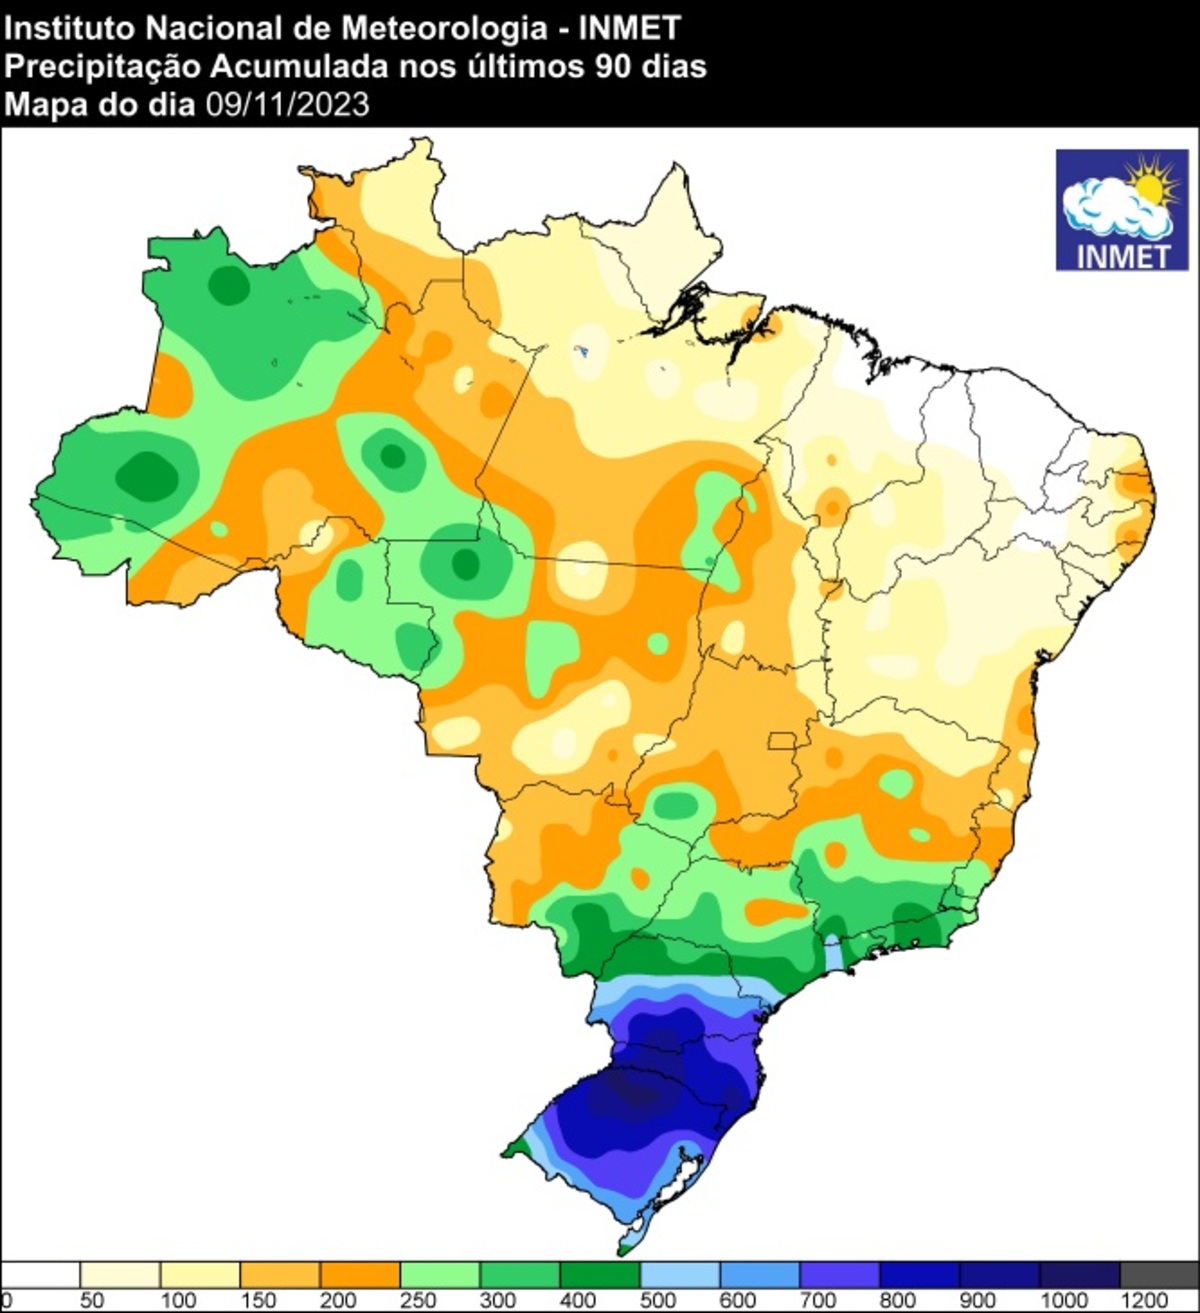 El Niño: veja vídeo sobre como fenômeno altera clima no Brasil 